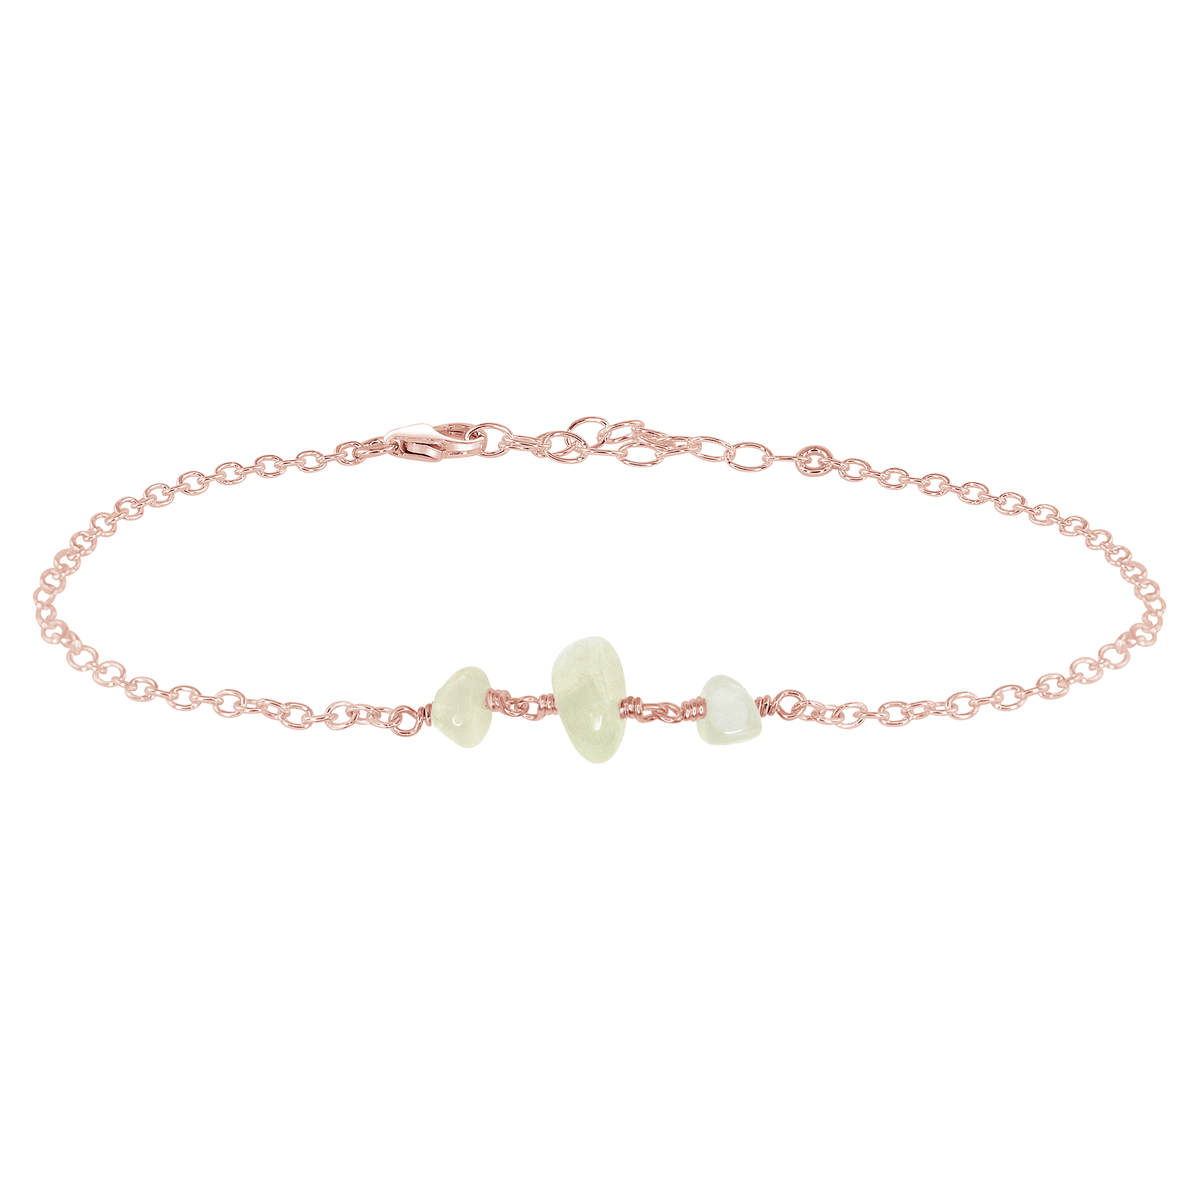 Beaded Chain Anklet - White Moonstone - 14K Rose Gold Fill - Luna Tide Handmade Jewellery